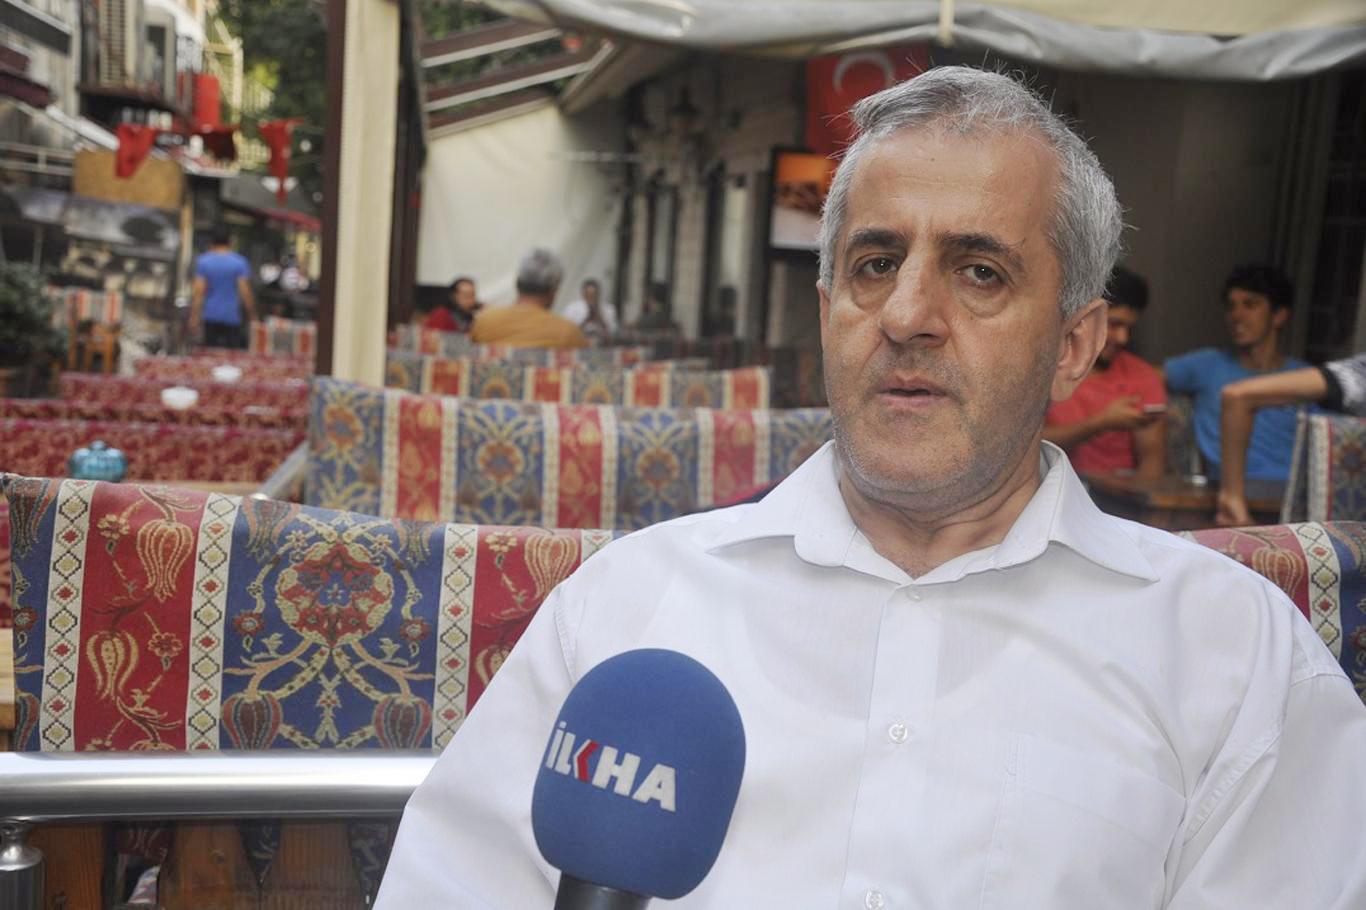 “Musul üzerinden Türkiye ve İran arasında bir çatışma arzulanıyor”